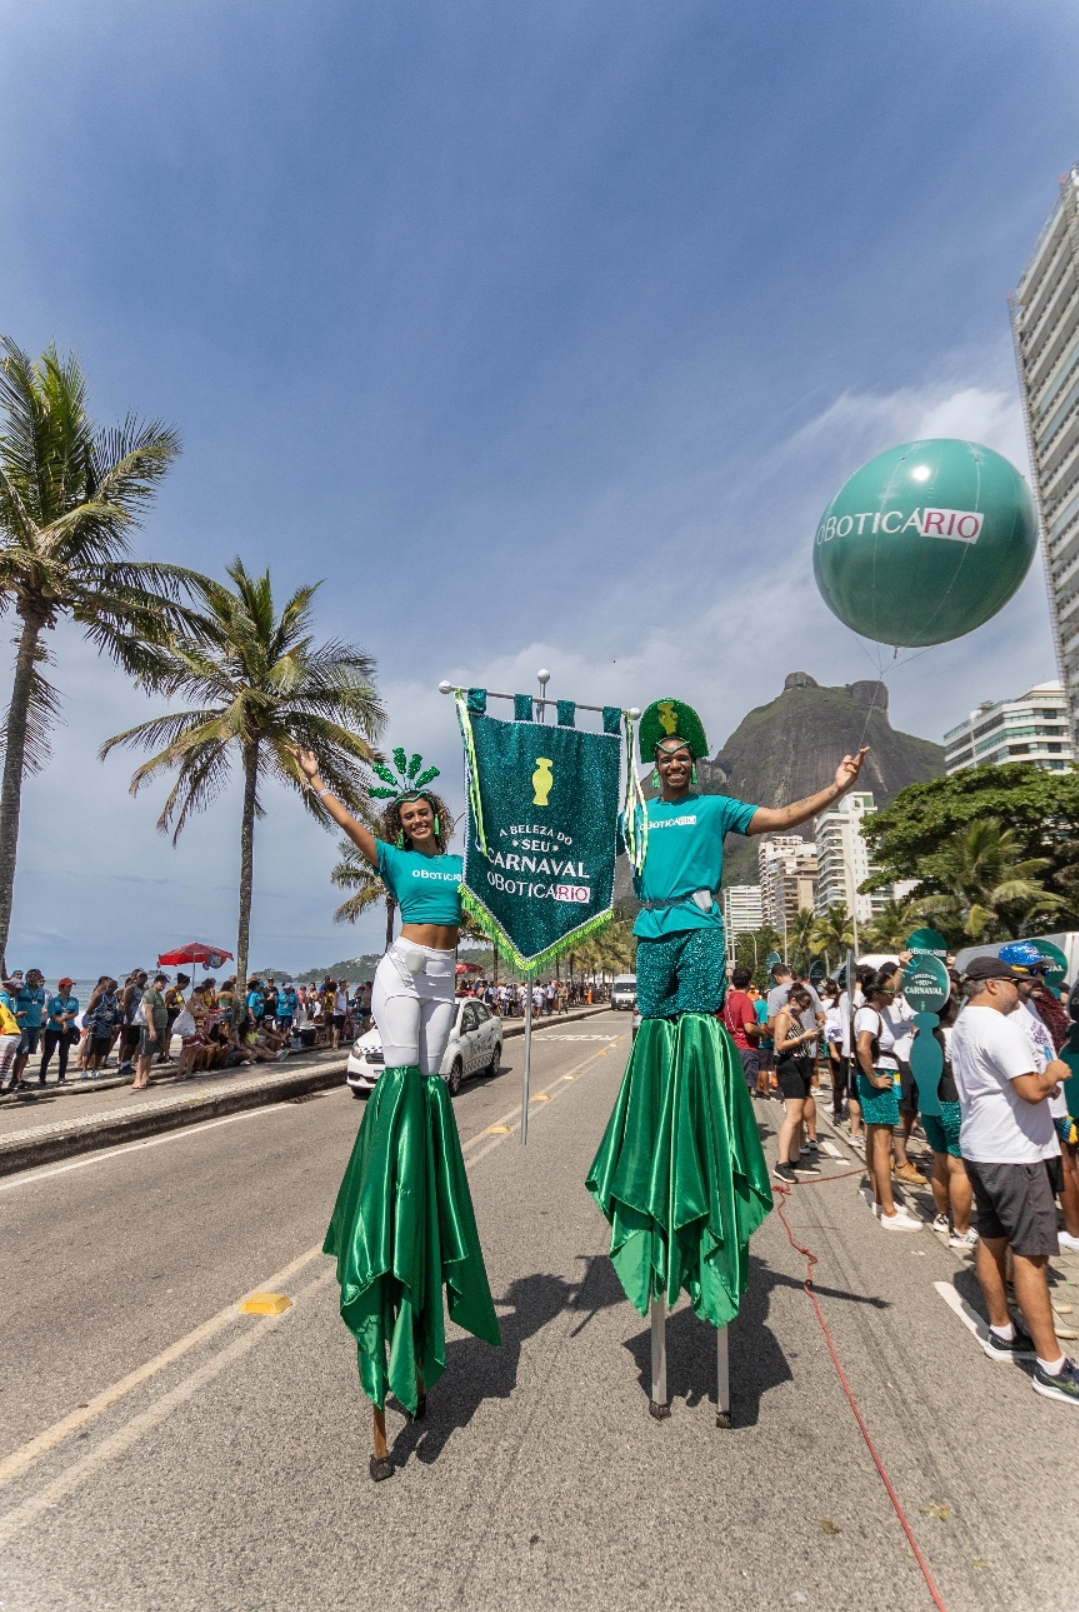 Marcas do Grupo Boticário anunciam estratégia de carnaval integrada com ações para impulsionar o segmento de beleza na data no Brasil